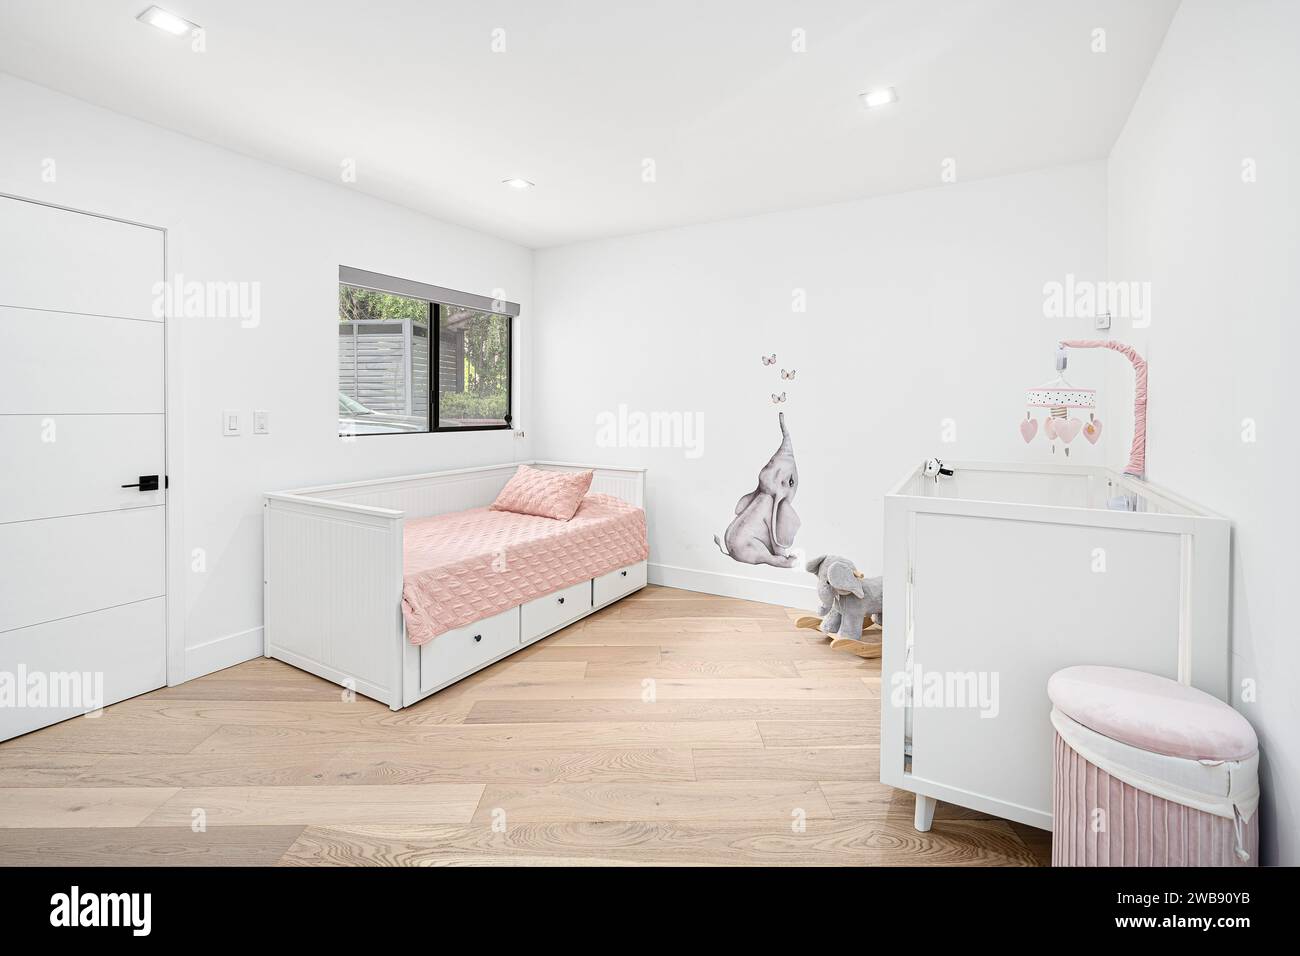 Ein gemütliches Schlafzimmer mit weiß gestrichener Wand, Twin-Size-Bett und Holzfußboden schafft eine warme und einladende Atmosphäre Stockfoto